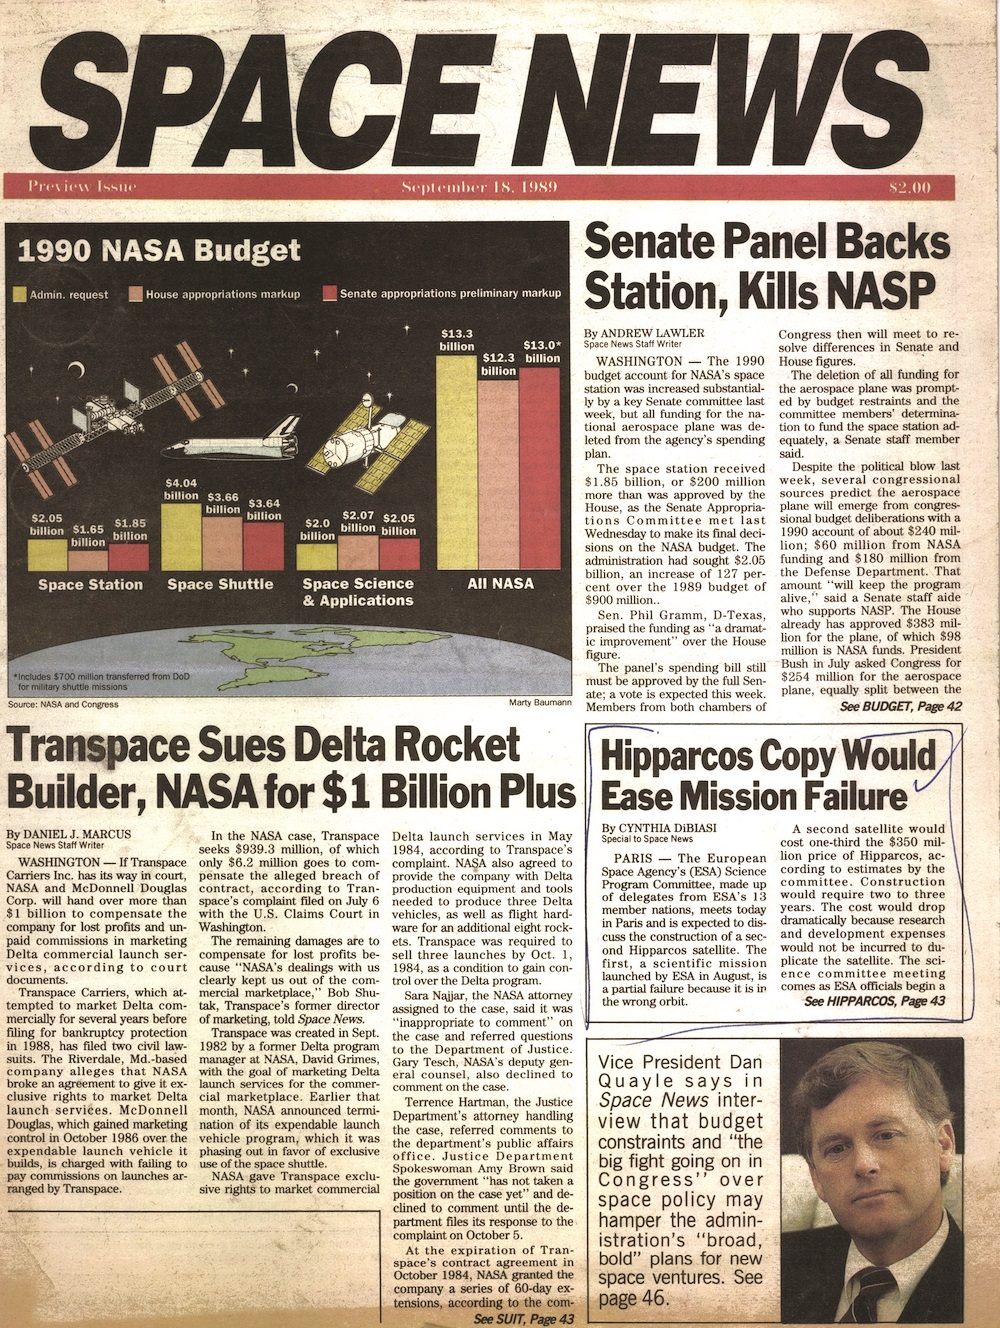 Cover_Vol. 0 No. 1 SPACE NEWS September 18, 1989 SpaceNews